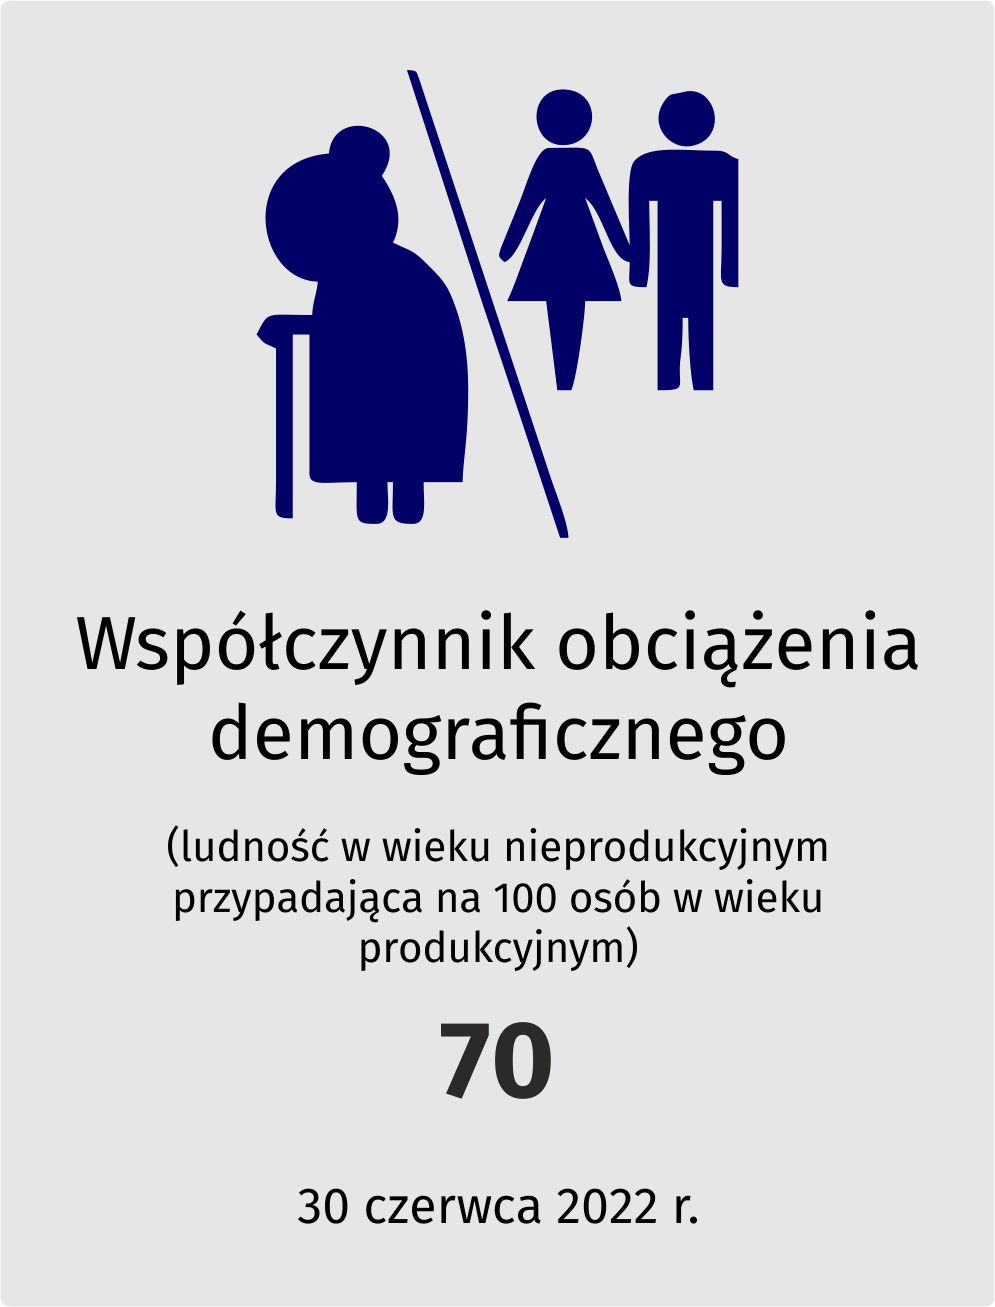 Współczynnik ociążenia demograficznego - 70 (30 czerwca 2022 r.)